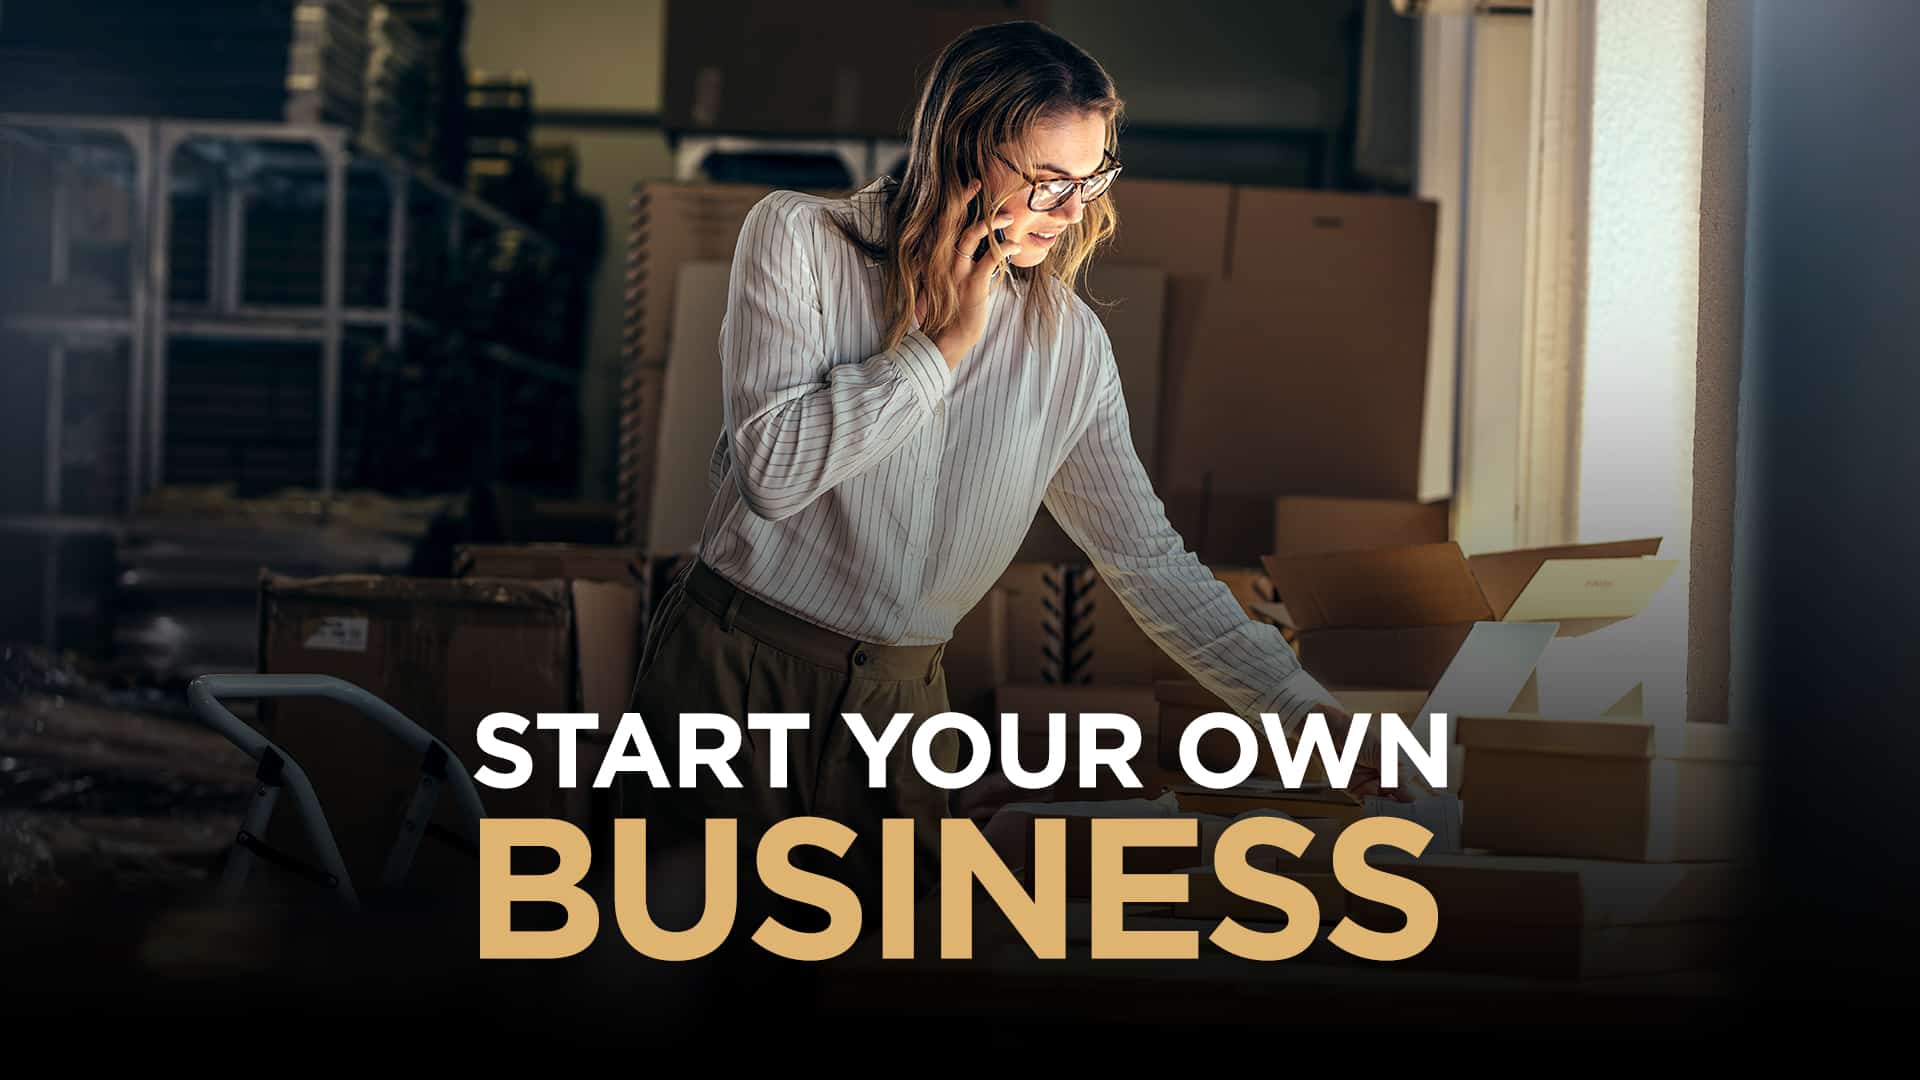 Mine own business. Own Business. Start own Business. Starting your own Business. Starting your Business.